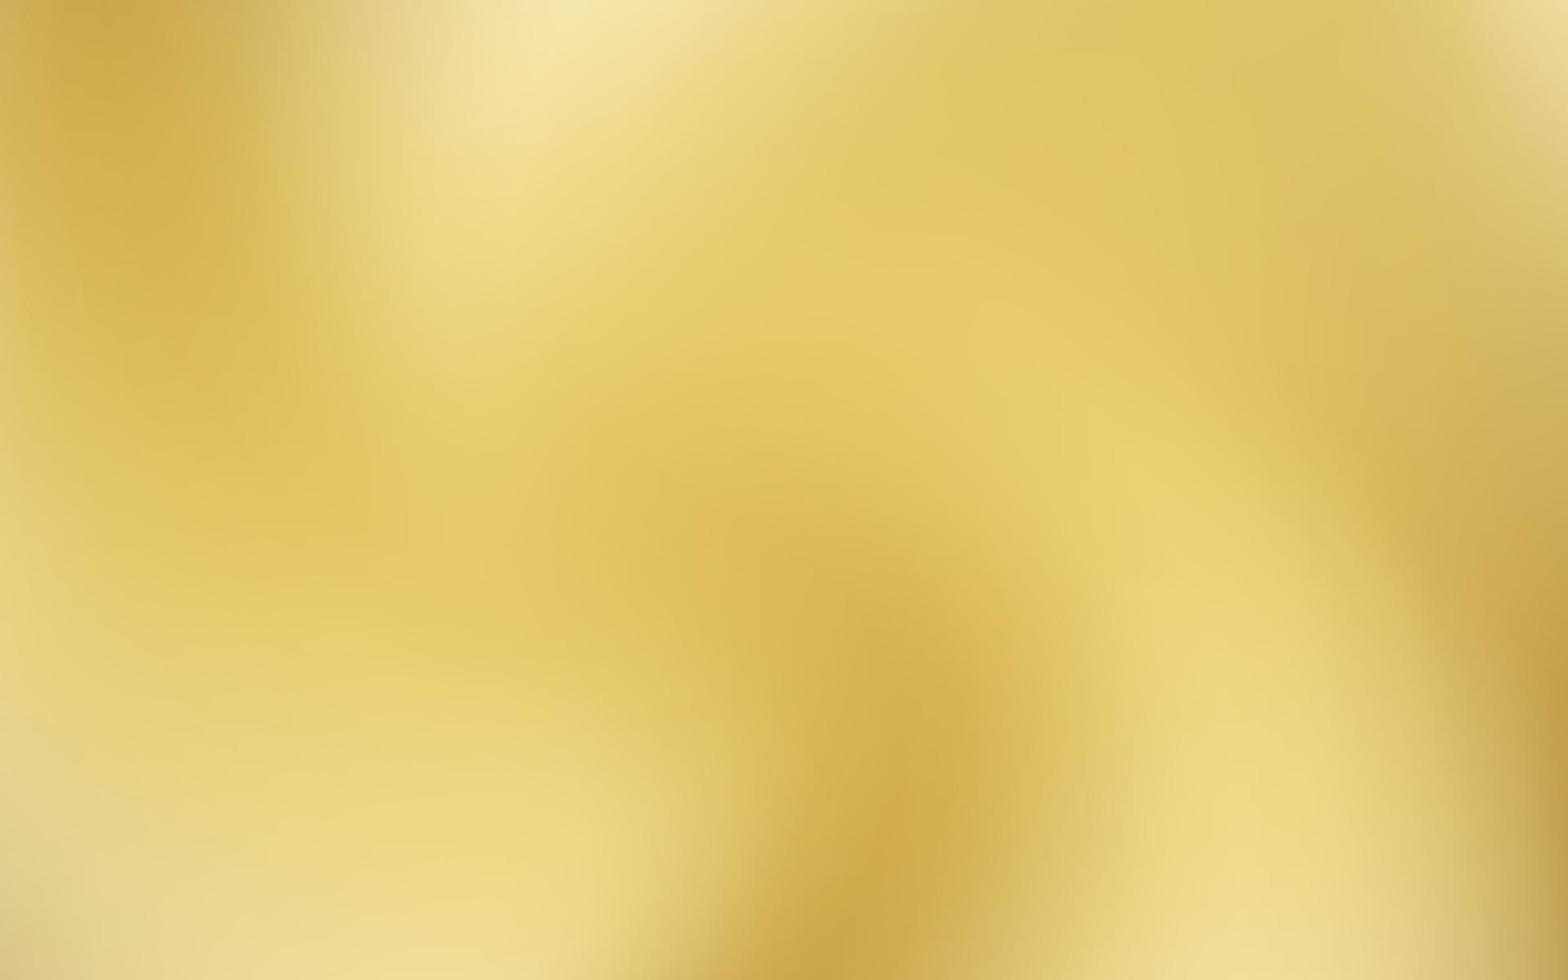 Gold background. Vector illustration. Eps10